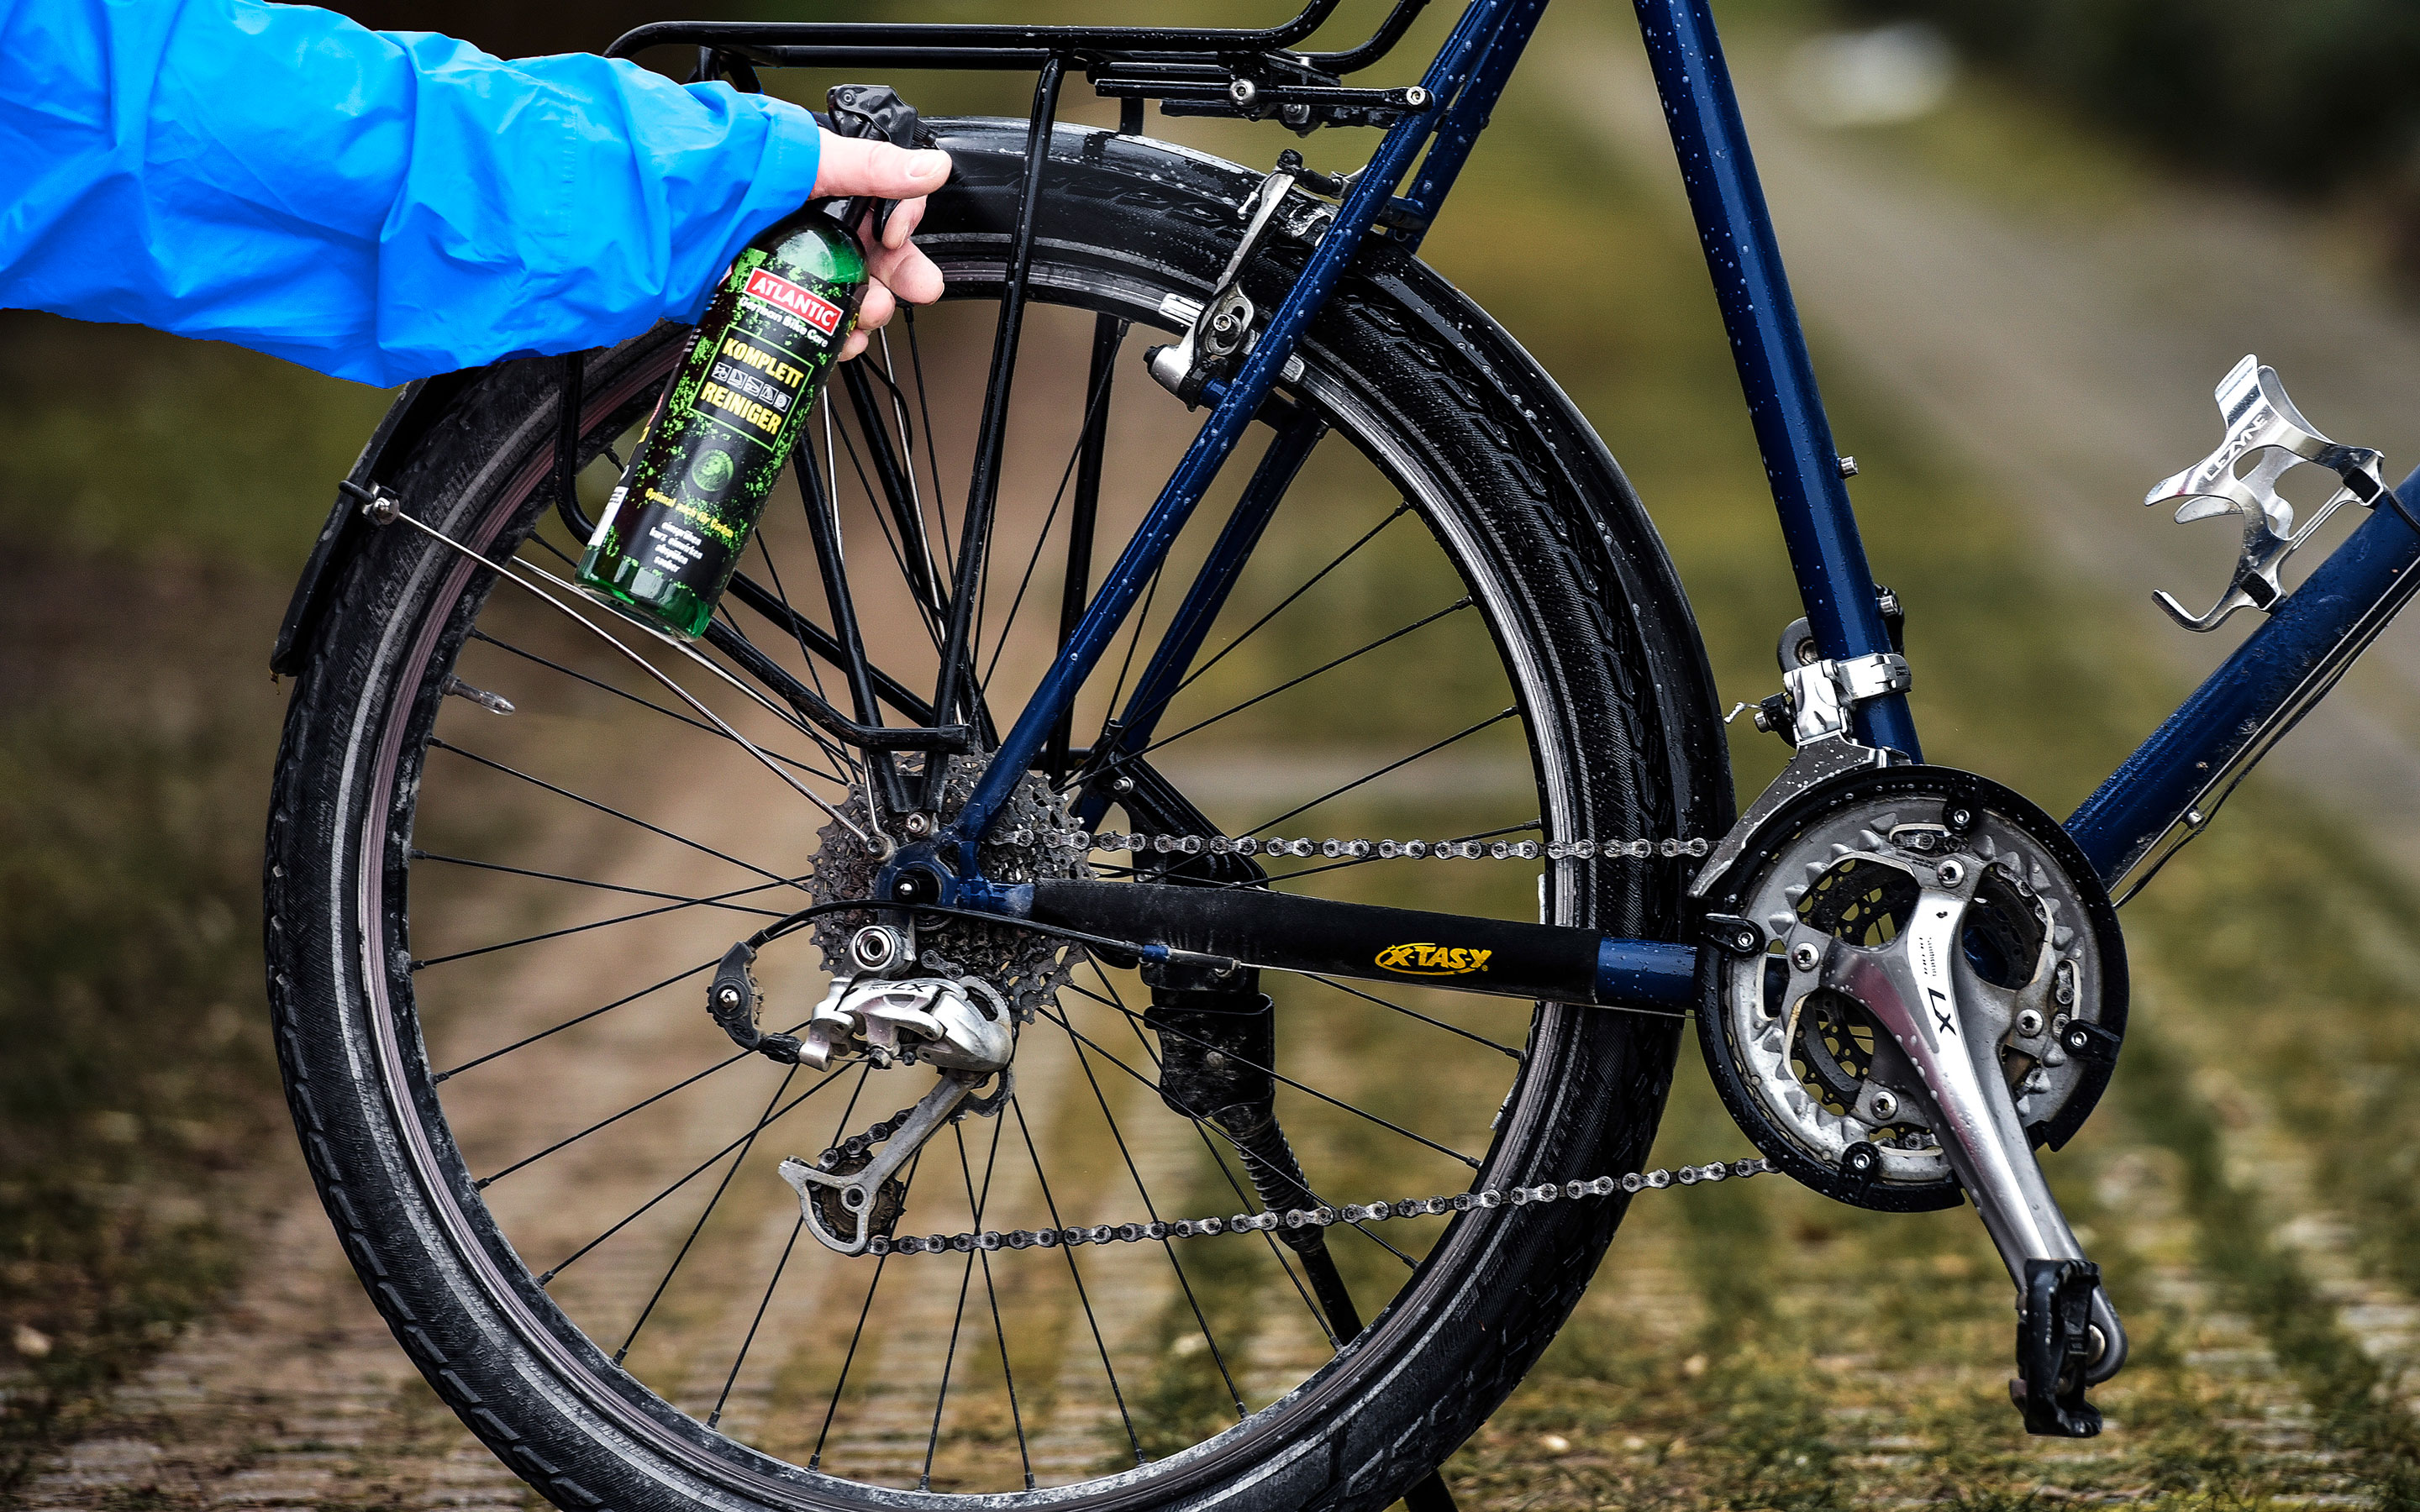 1 Satz Fahrrad Reiniger Bürsten-ausrüstung Wartung Reinigung Bürsten-reinigungsmittel-Tools Einschließlich Rad Kettenbürste Reifen Scrubber Component Bürsten-Werkzeug-Set Für Fahrrad rot